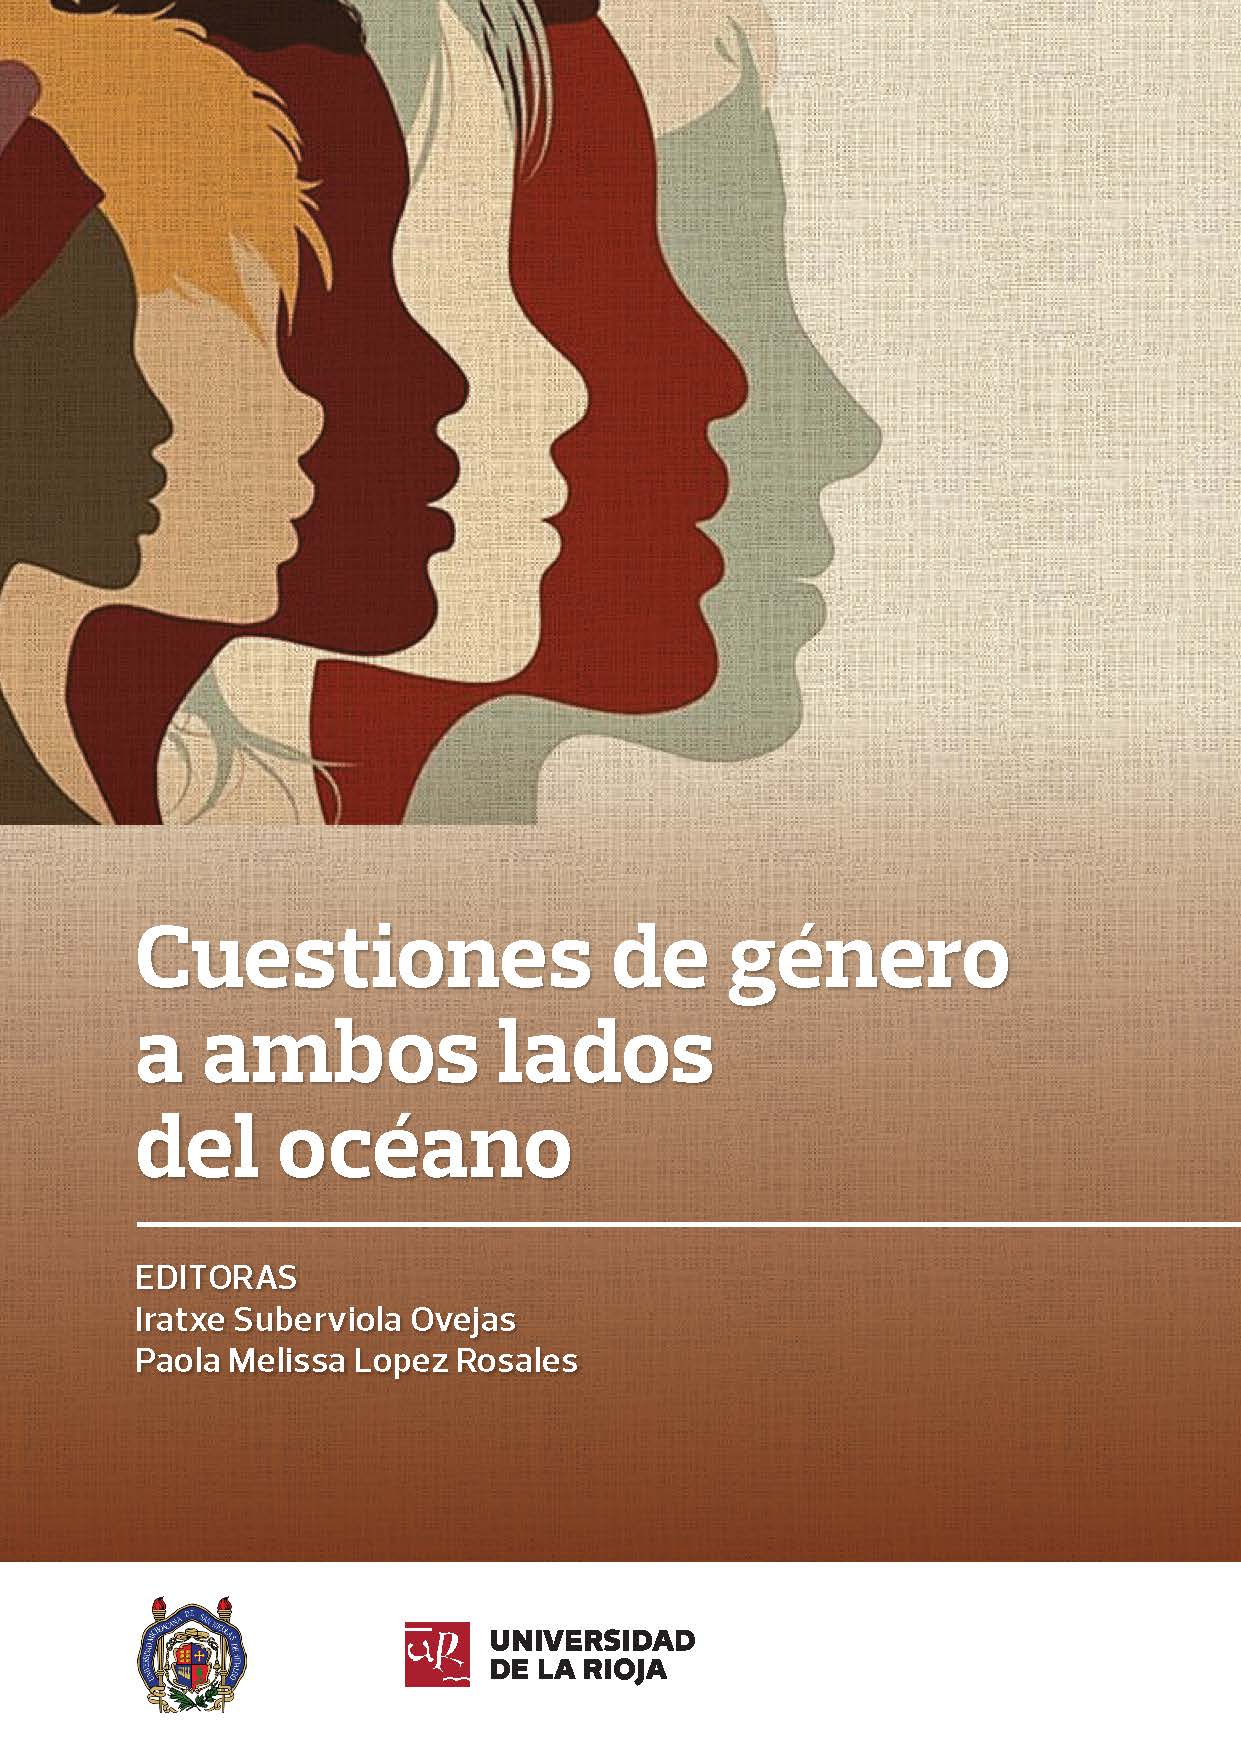 Imagen de portada del libro Cuestiones de género a ambos lados del océano